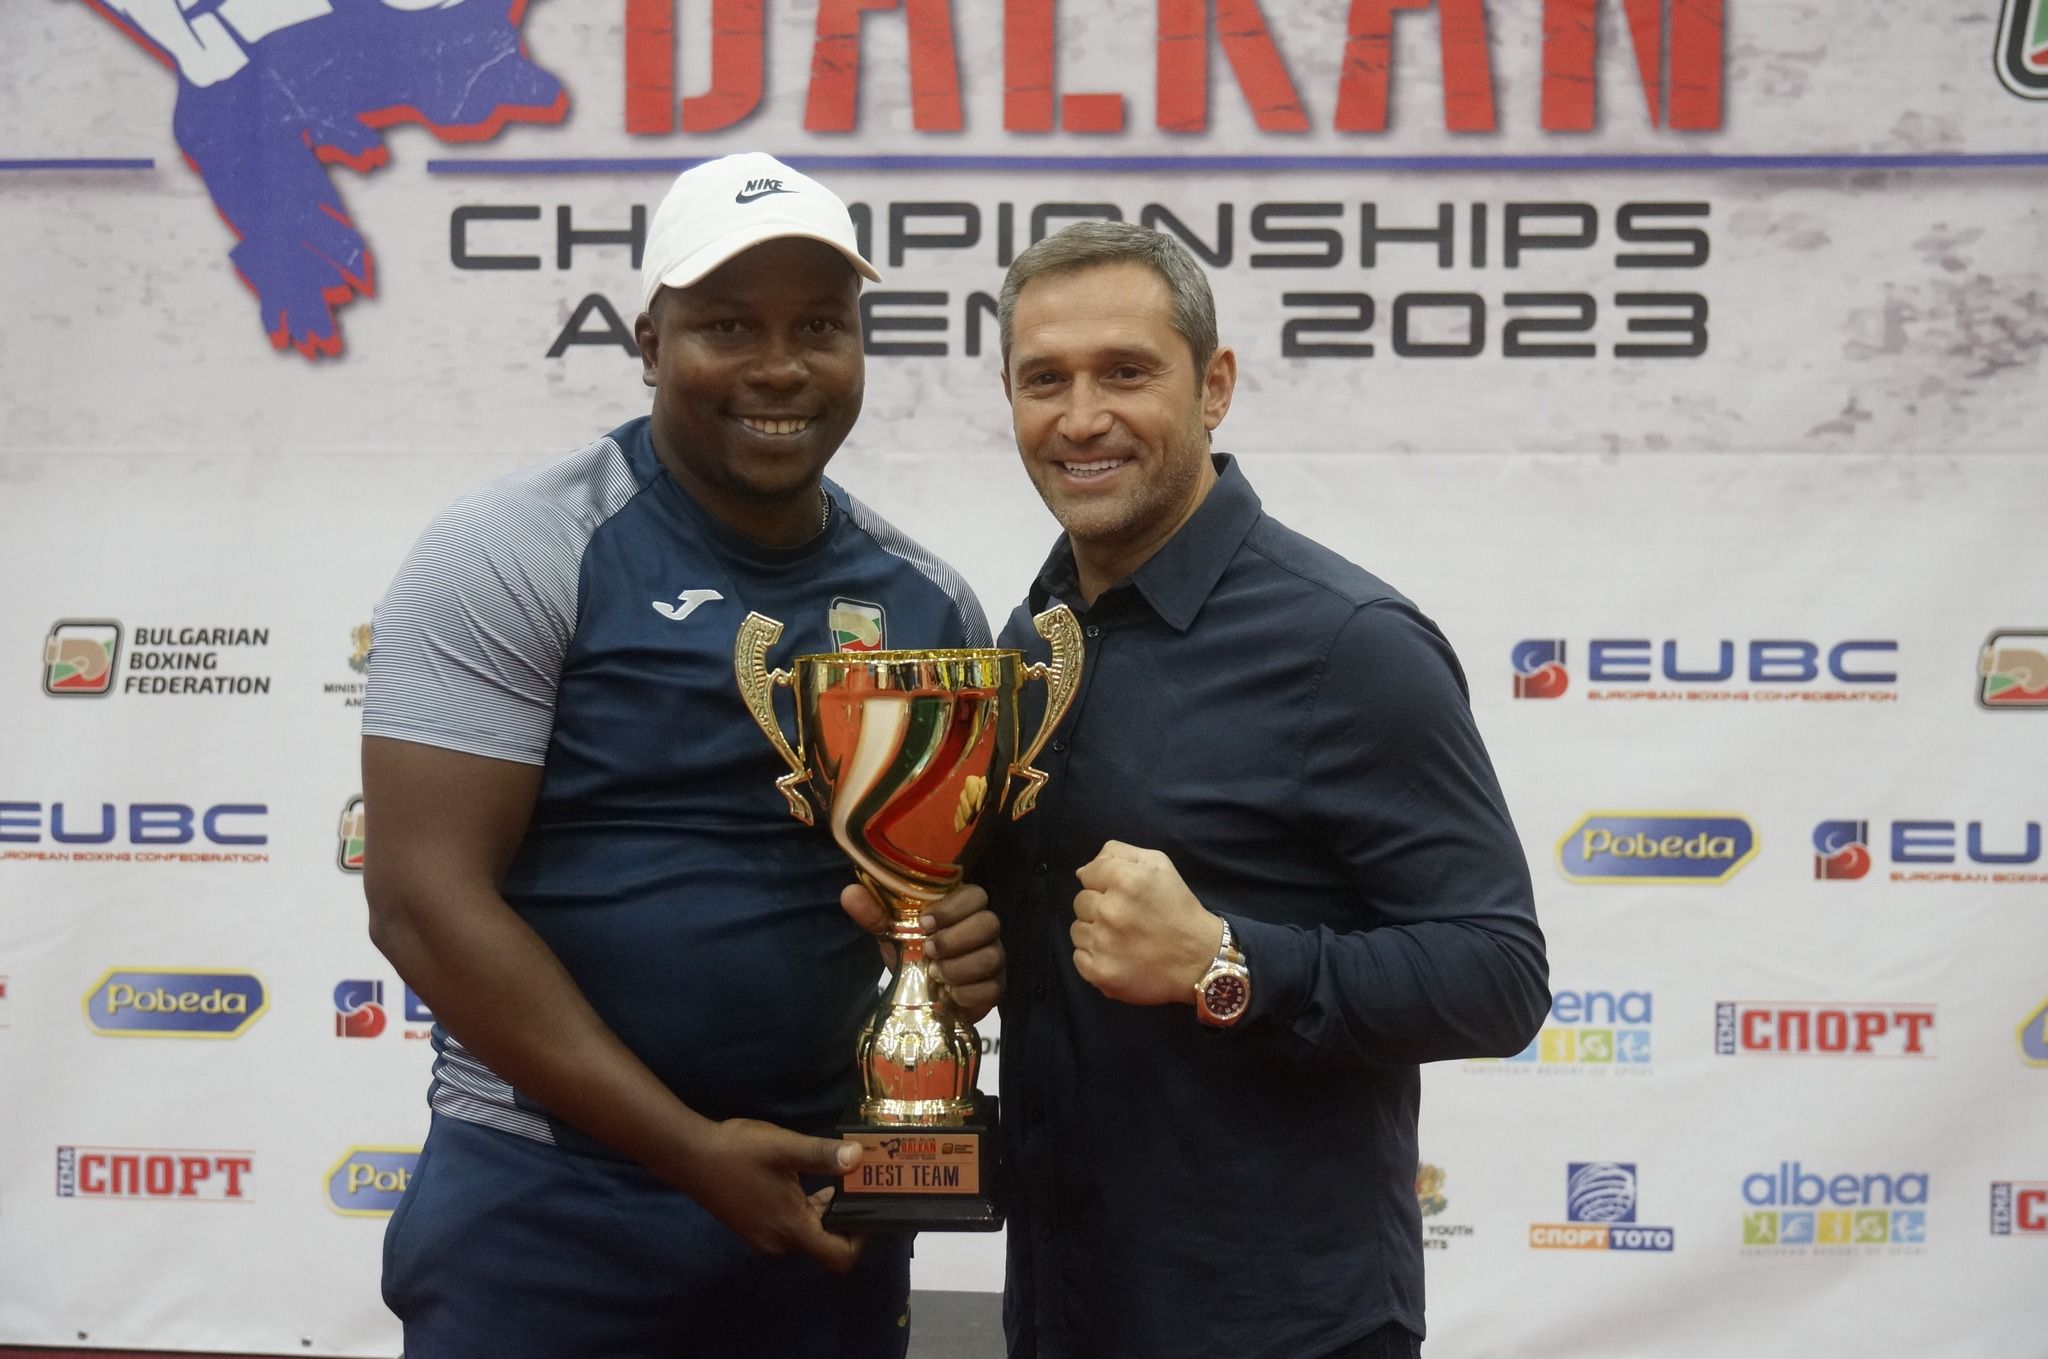 Треньорите с висока оценка след Балканския шампионат в Албена, Росенов се цели в рекорд на Даниел Асенов